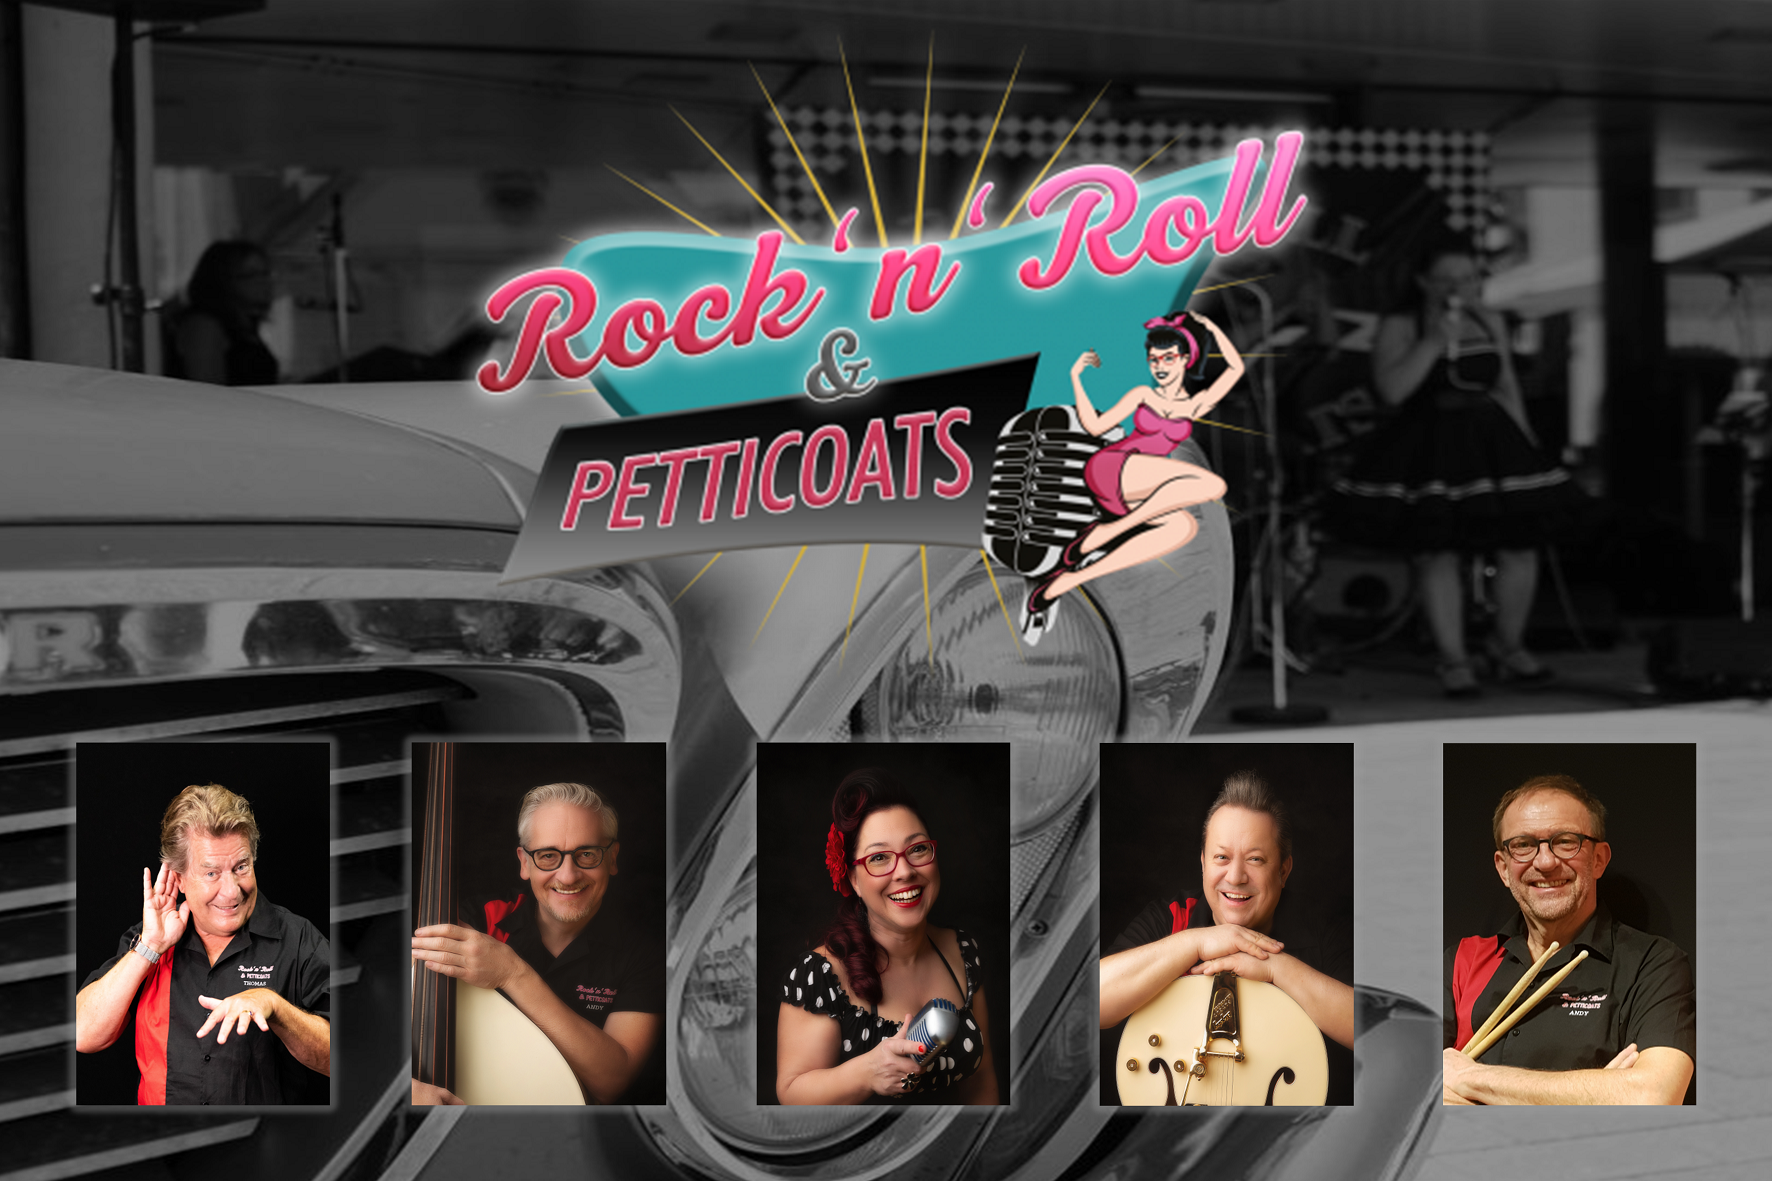 Rock'n'Roll & Petticoats